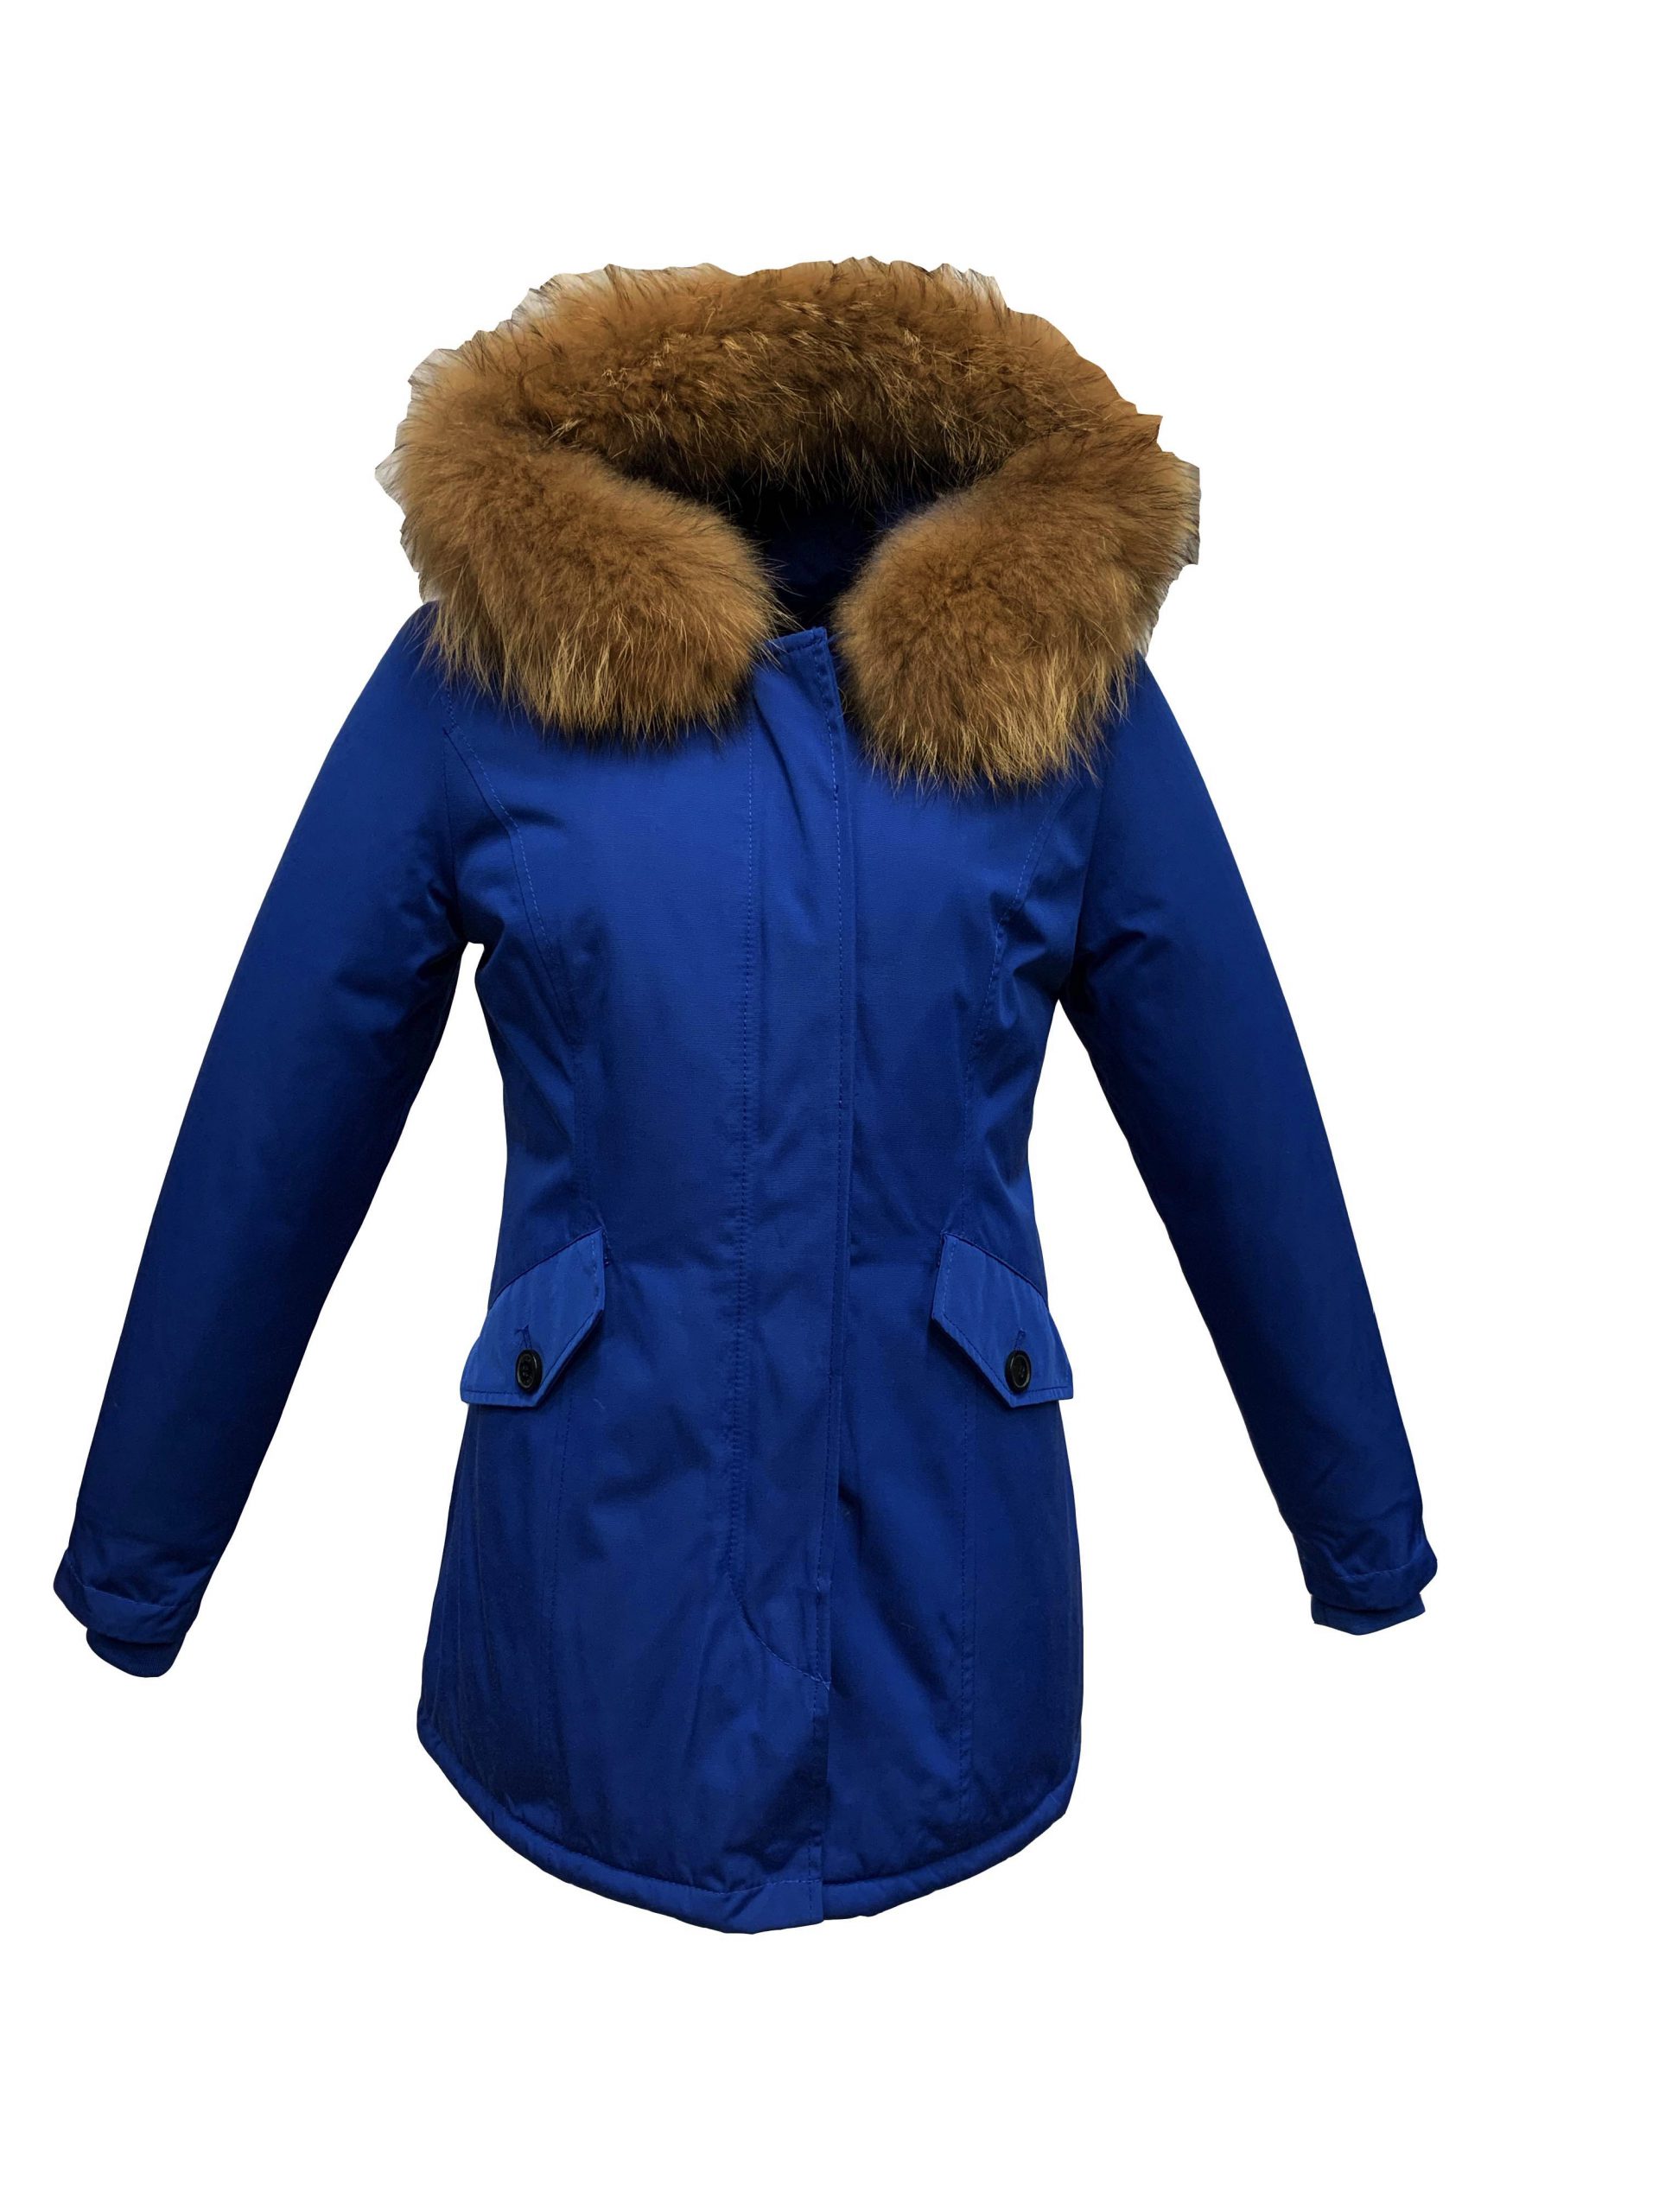 uitvinden voorbeeld handig Dames winter jas met bontkraag blauw- Canada – BK Leder